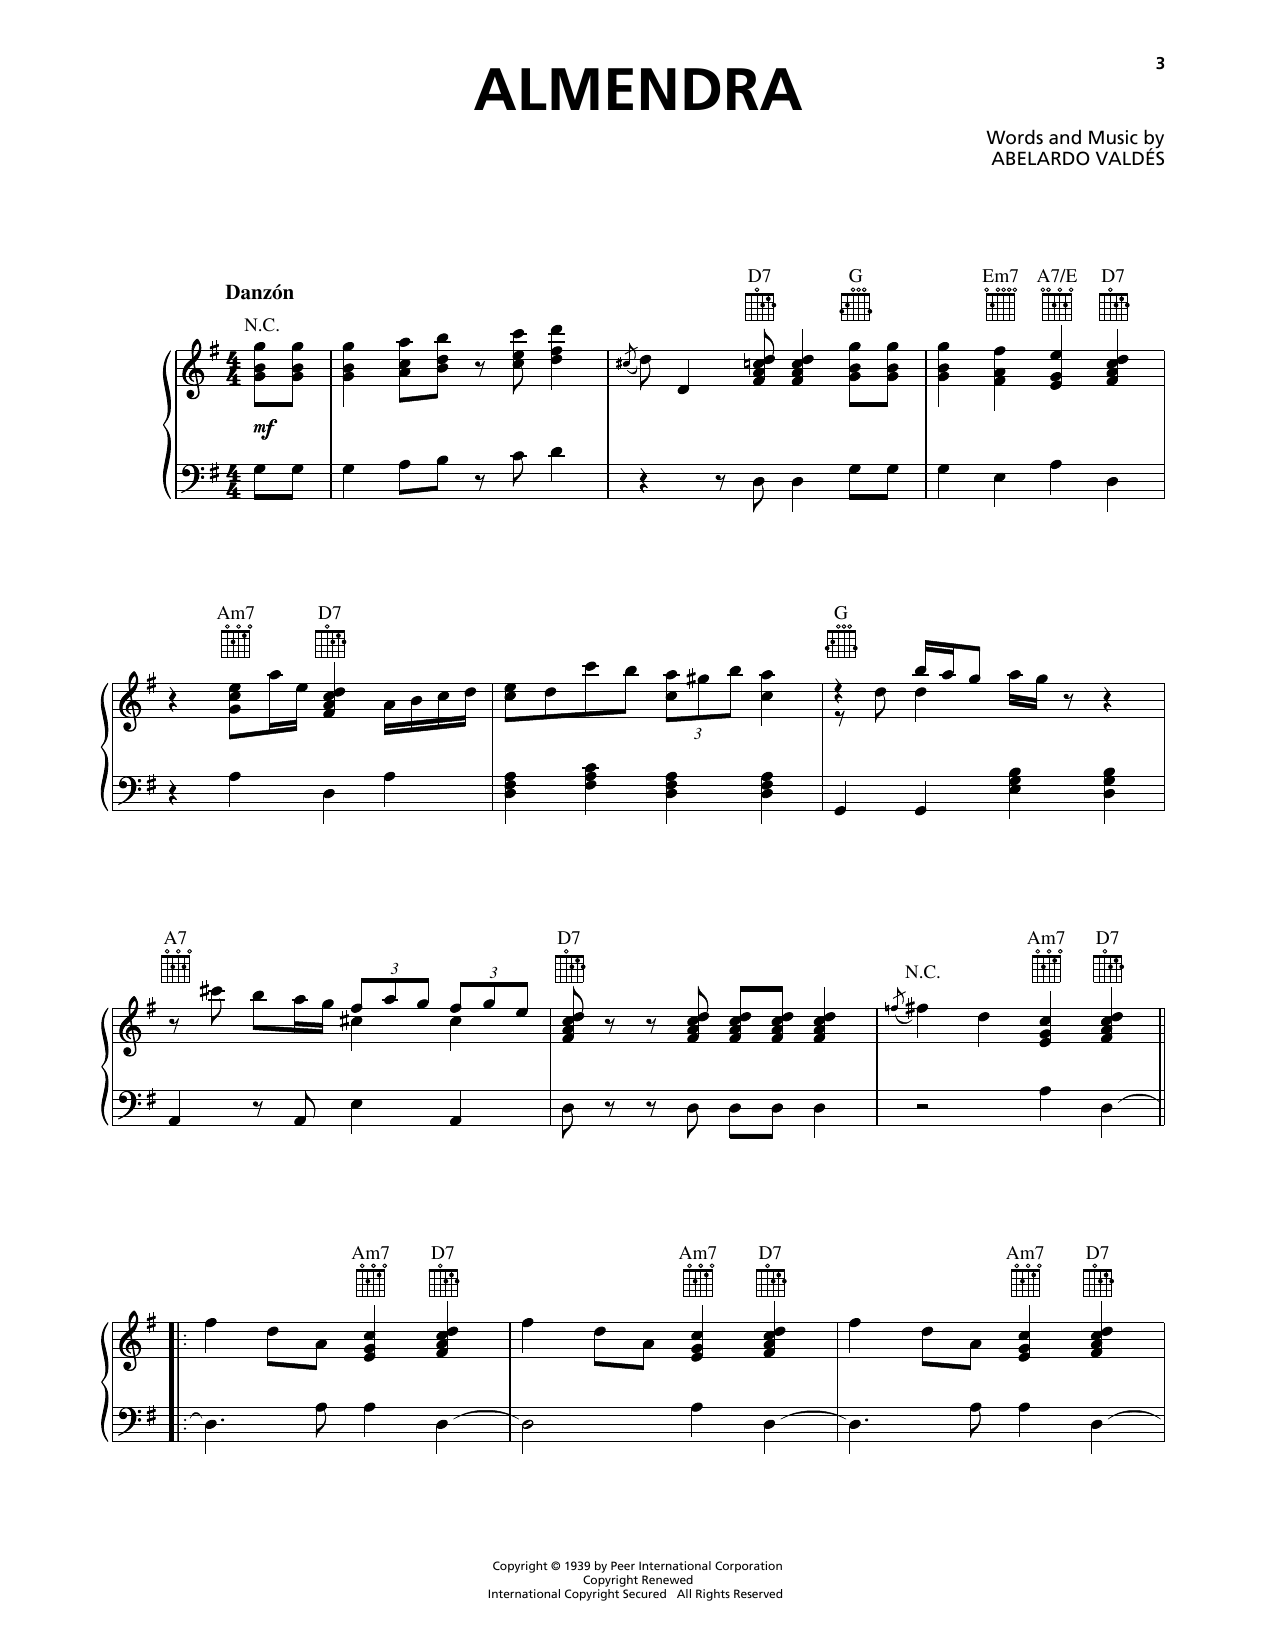 Orquesta Aragon Almendra Sheet Music Notes & Chords for Piano Solo - Download or Print PDF